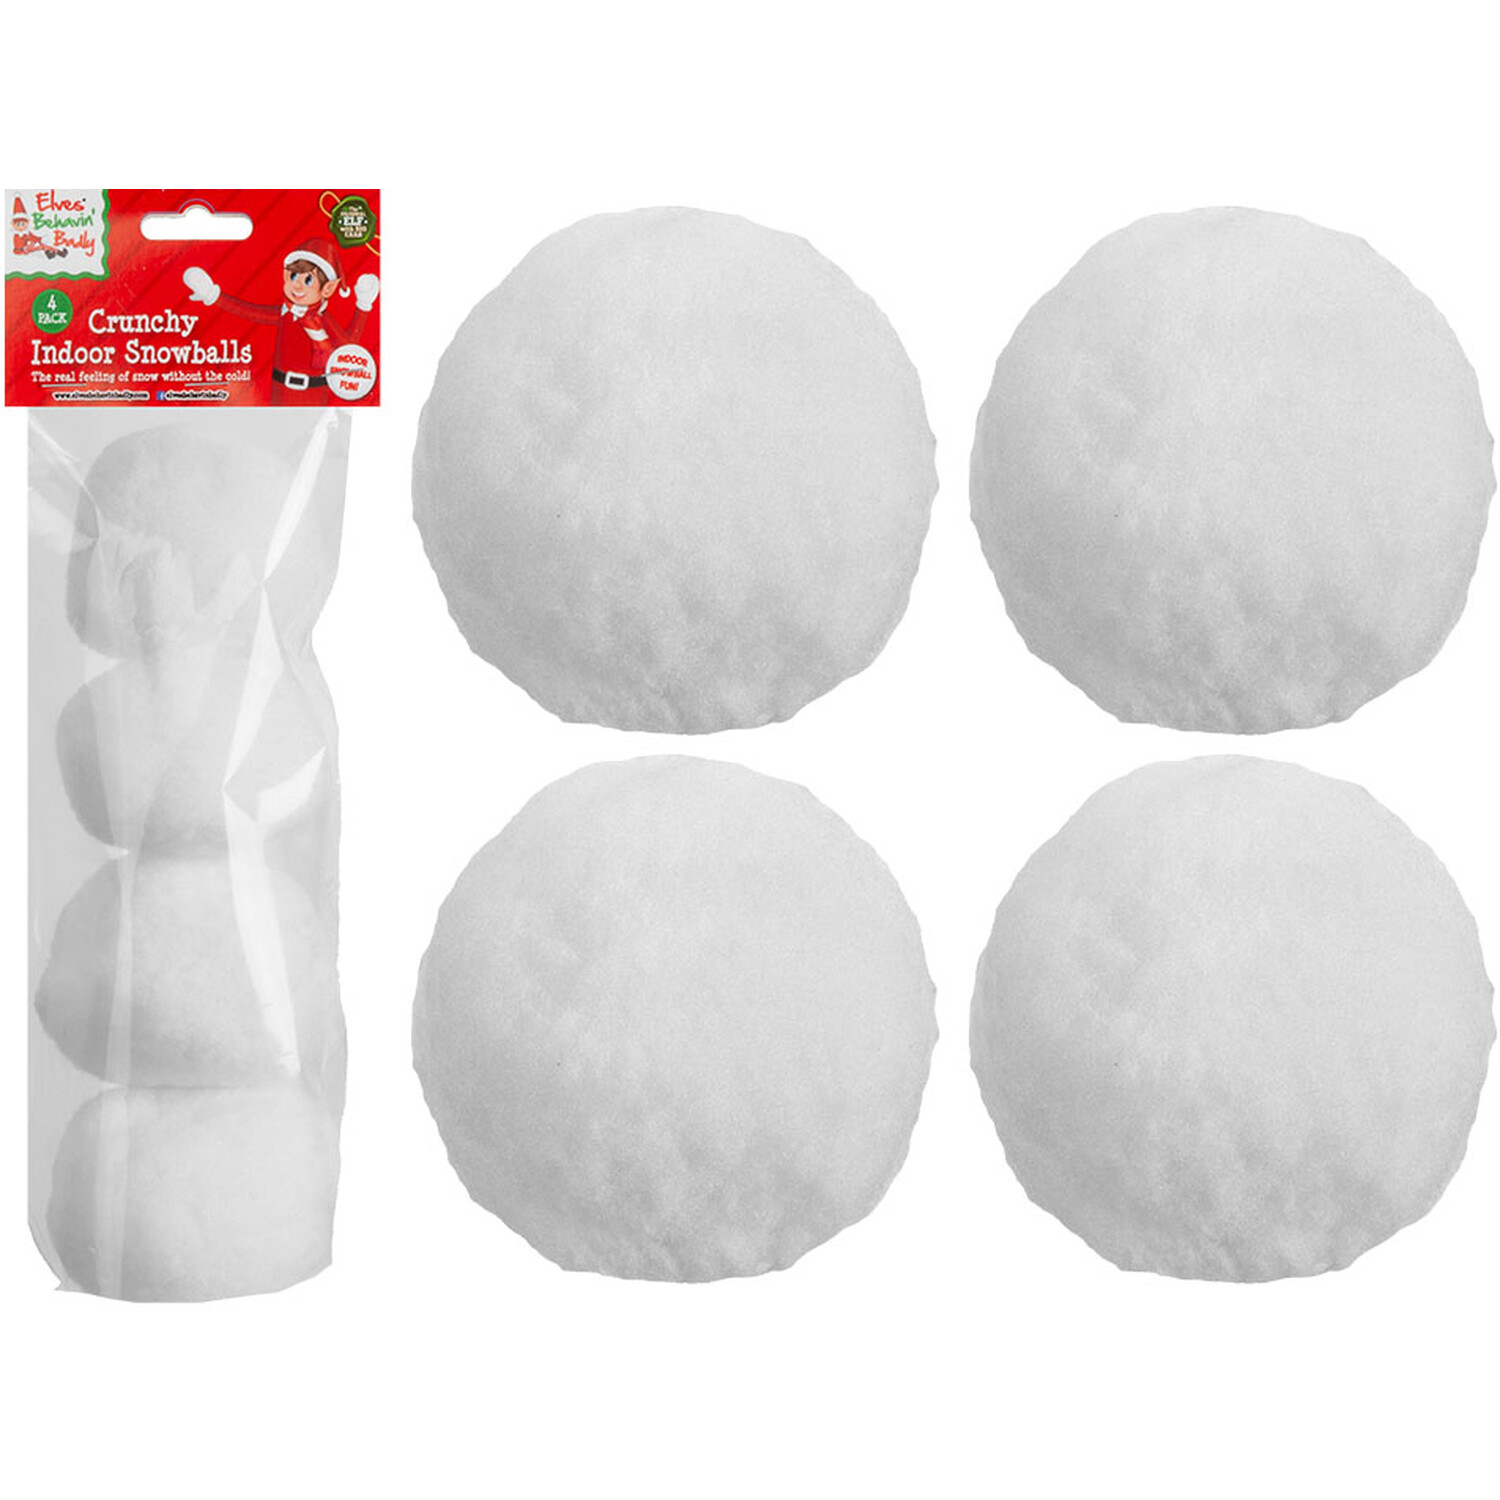 Pack of 4 Indoor Snowballs